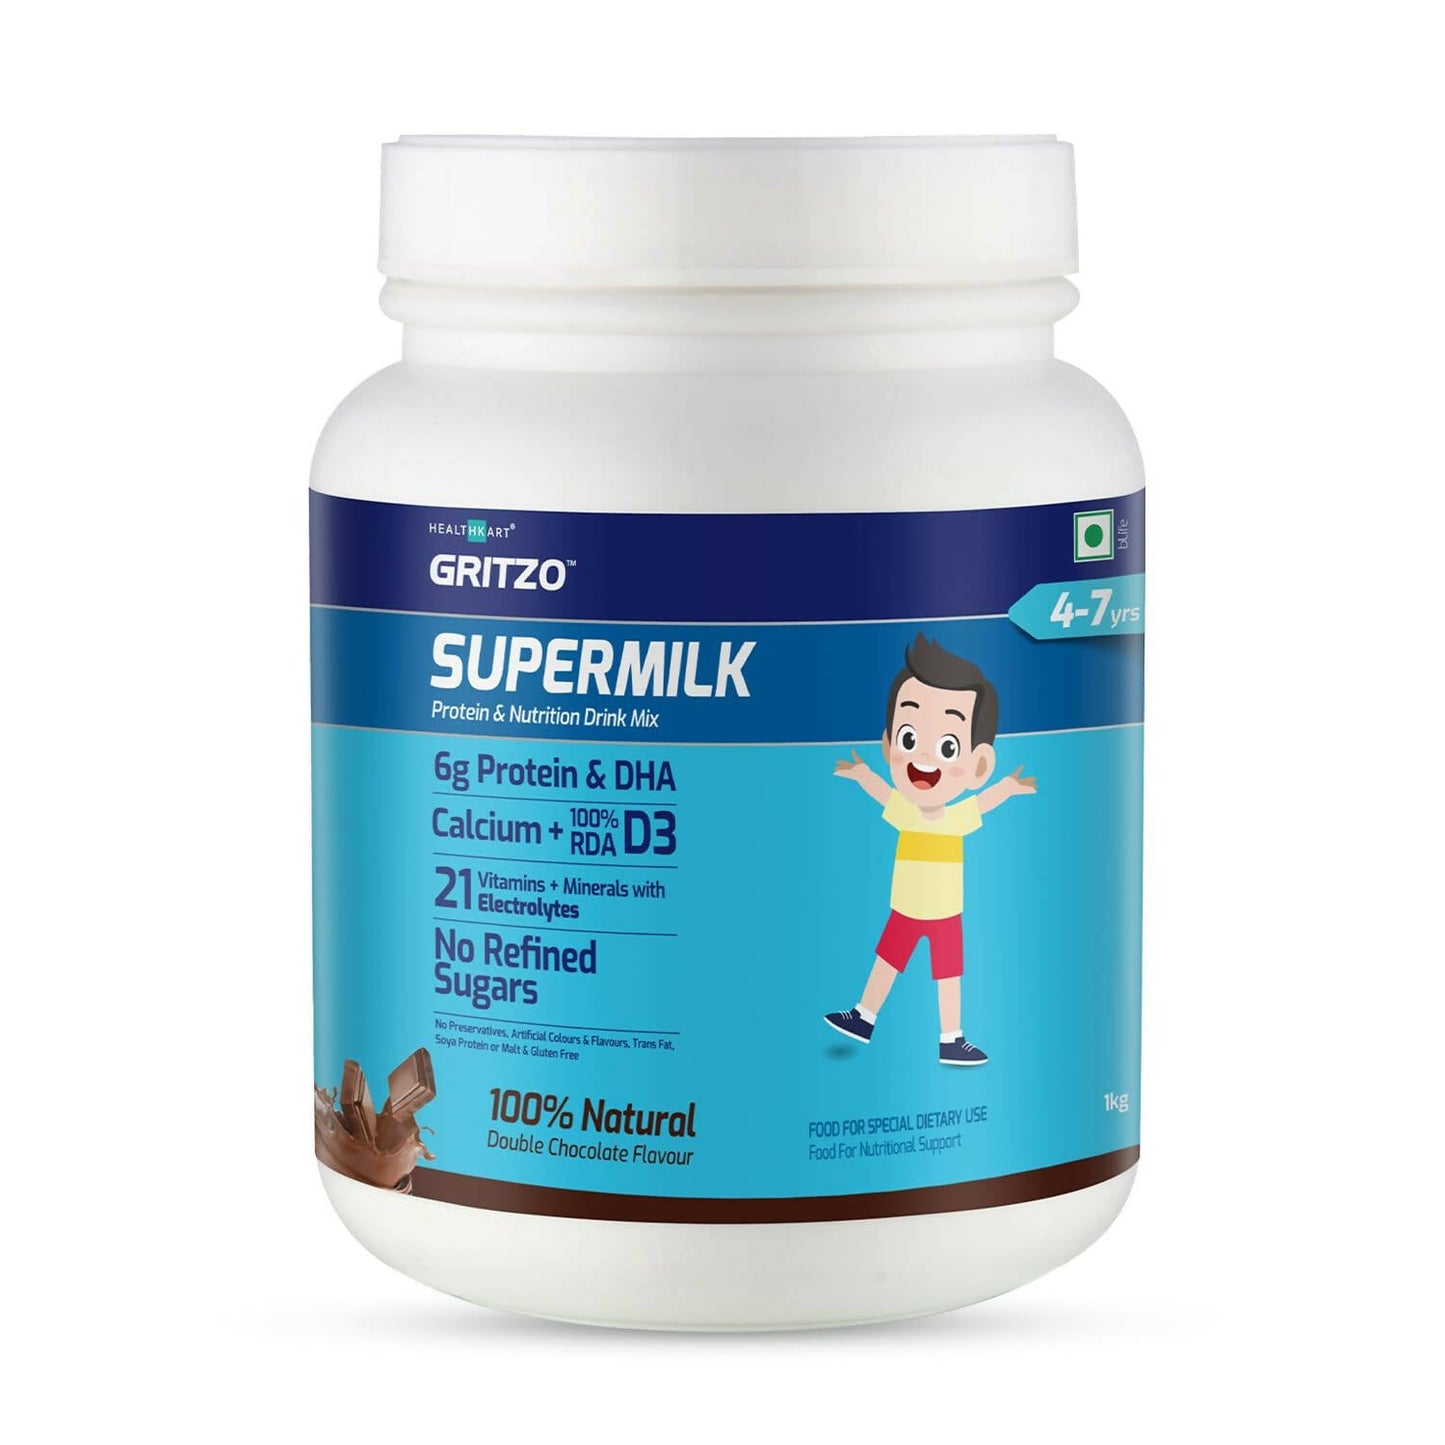 Gritzo SuperMilk 4-7y (Active Kids) Health Drink for Kids - BUDNE